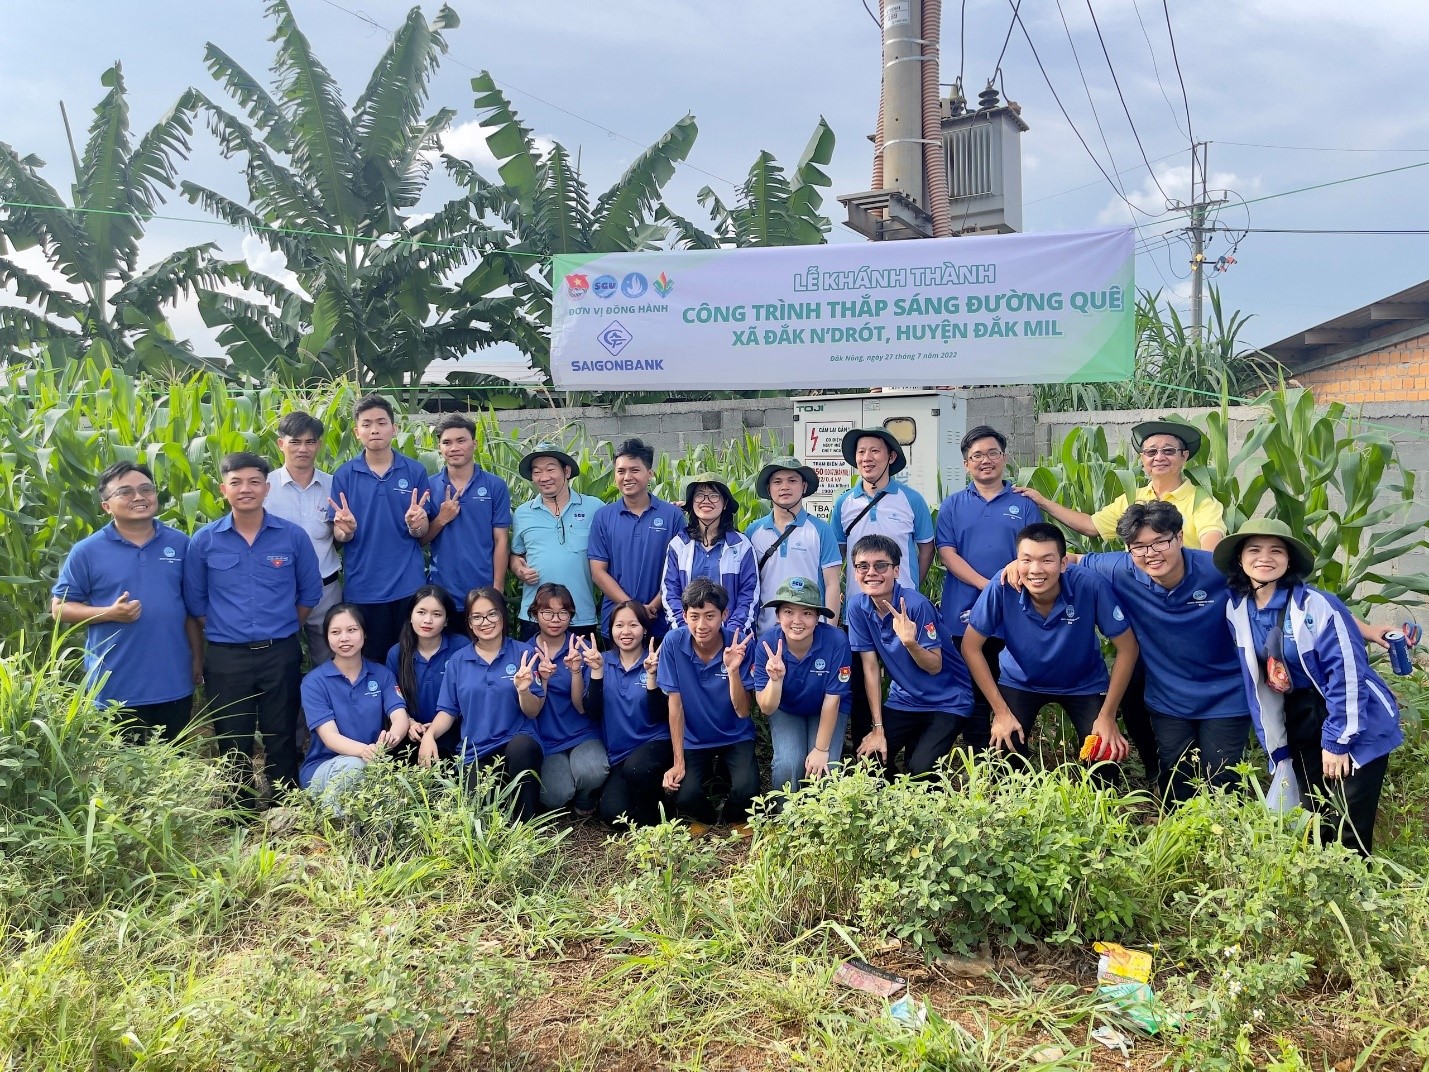 SAIGONBANK tài trợ công trình “Thắp sáng đường quê” và tổ chức “Sân chơi thiếu nhi” tại tỉnh Đắk Nông